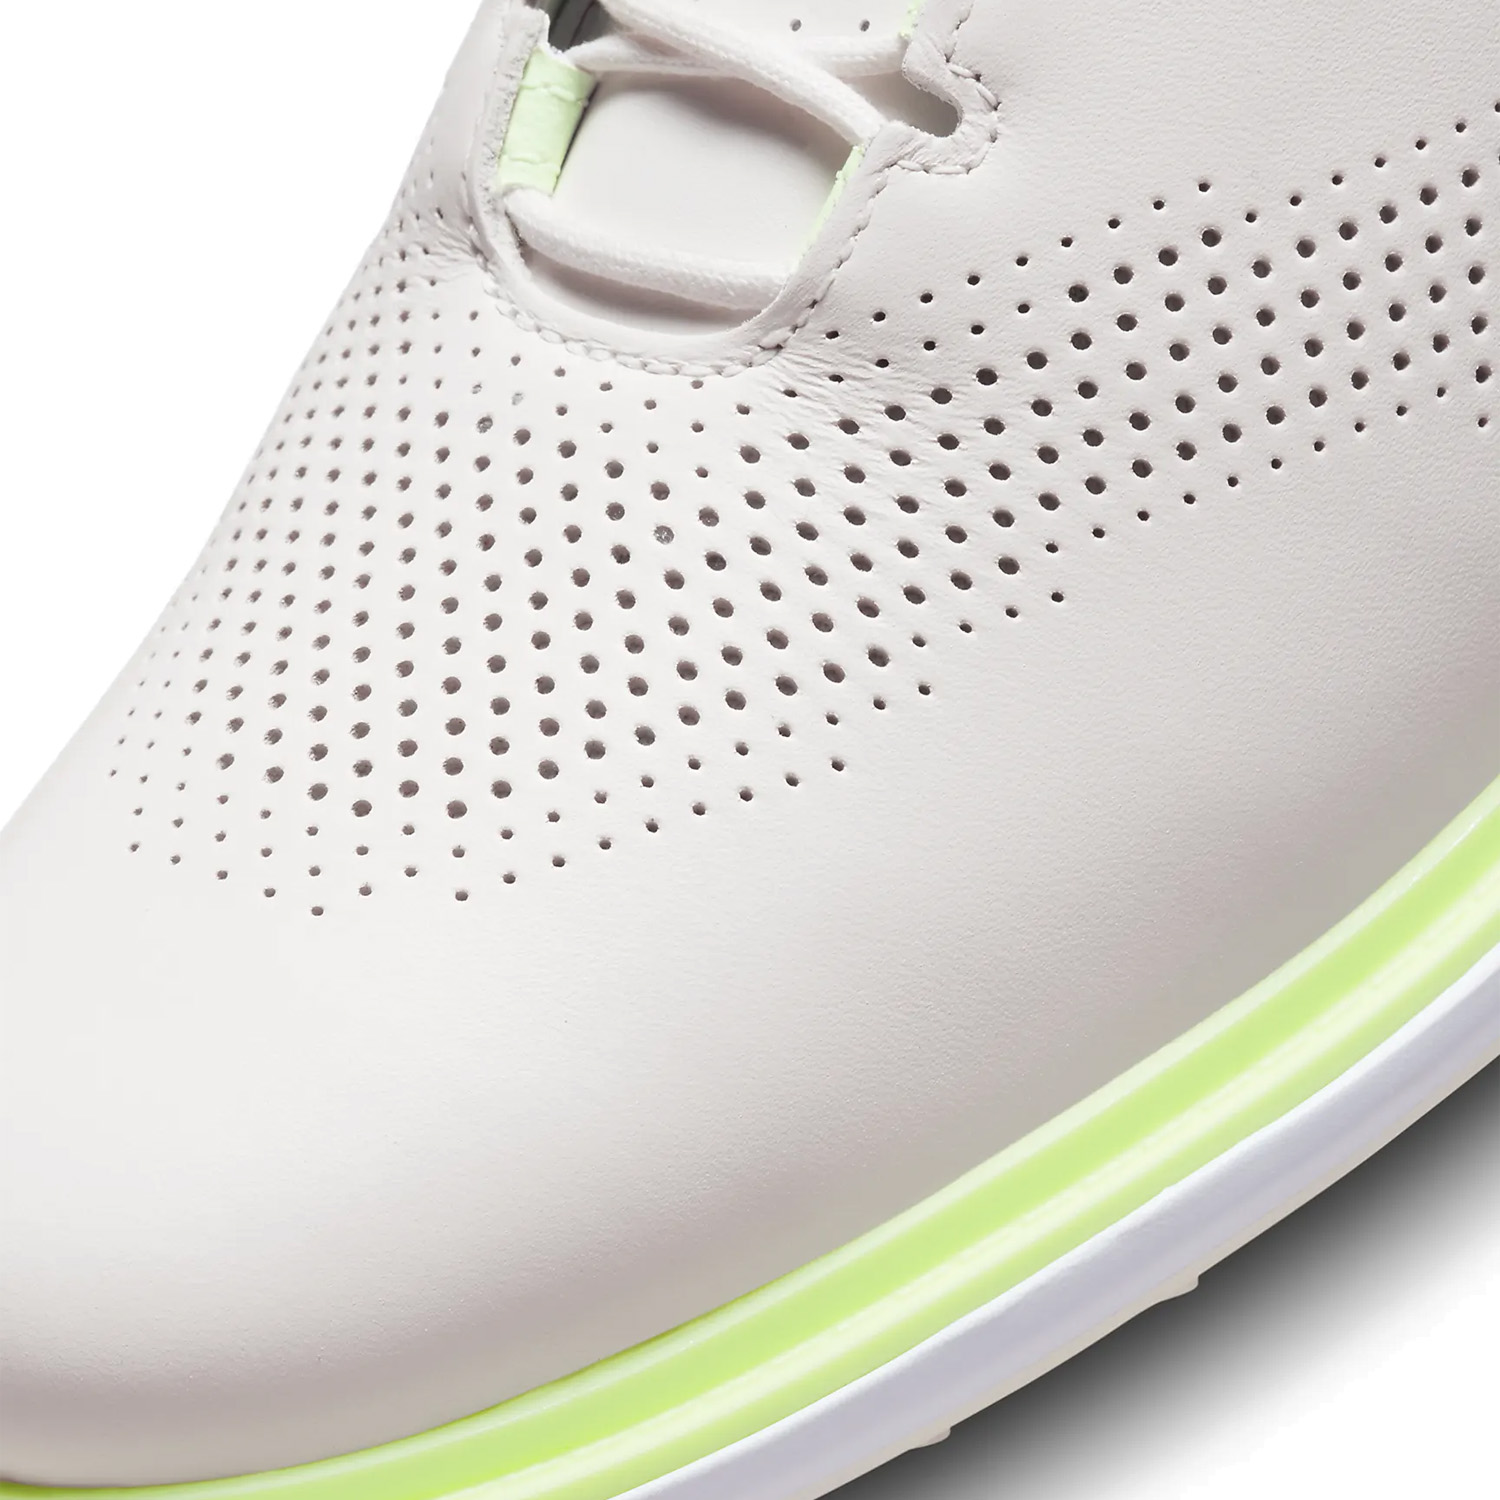 Nike Jordan ADG 4 Golf Shoes Phantom/Barely Volt/White/Light Bone ...